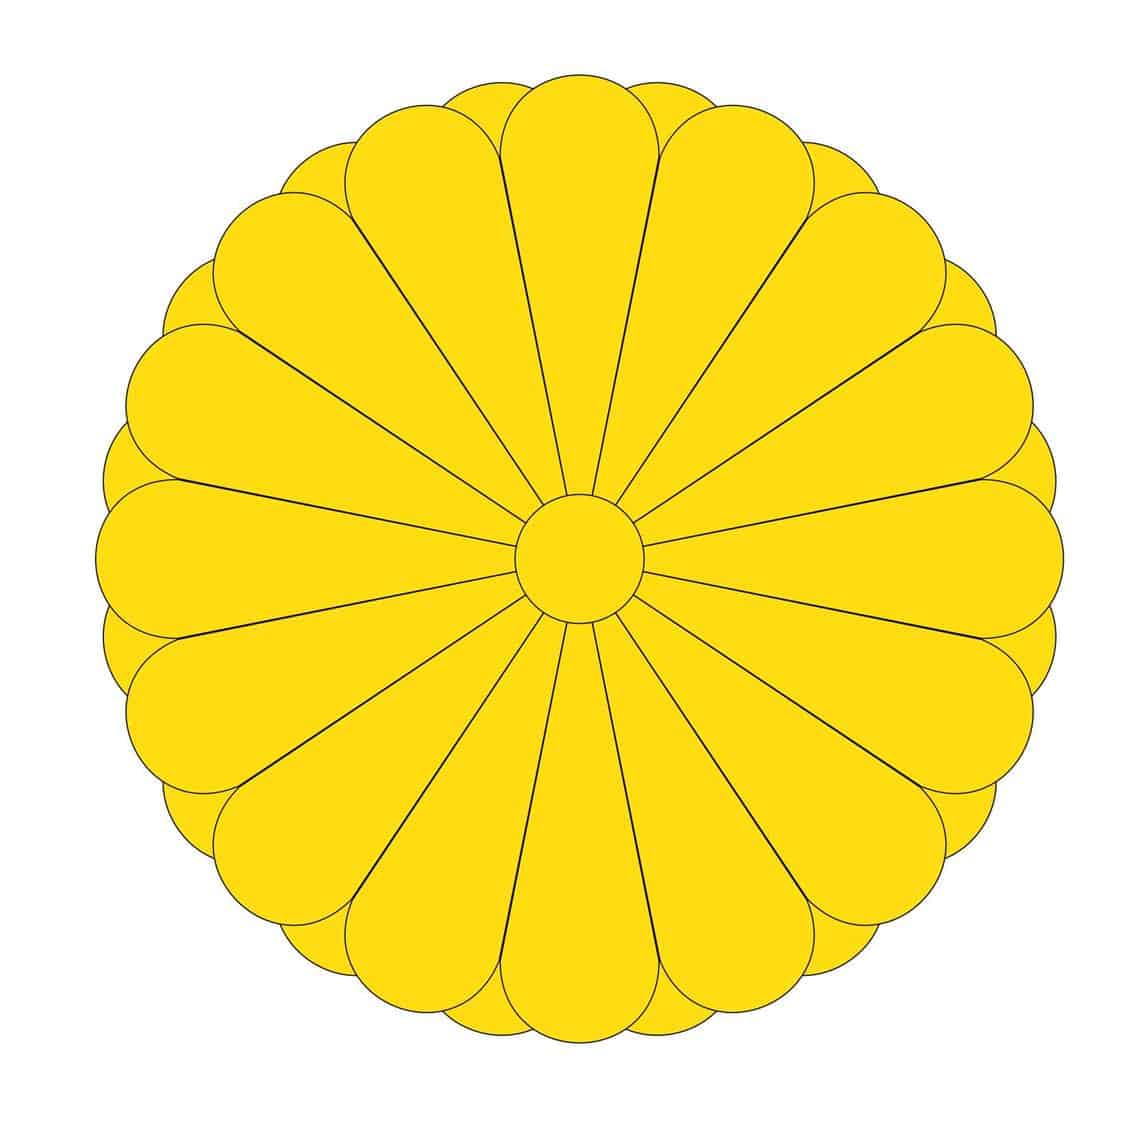 Imperial Seal of Japan